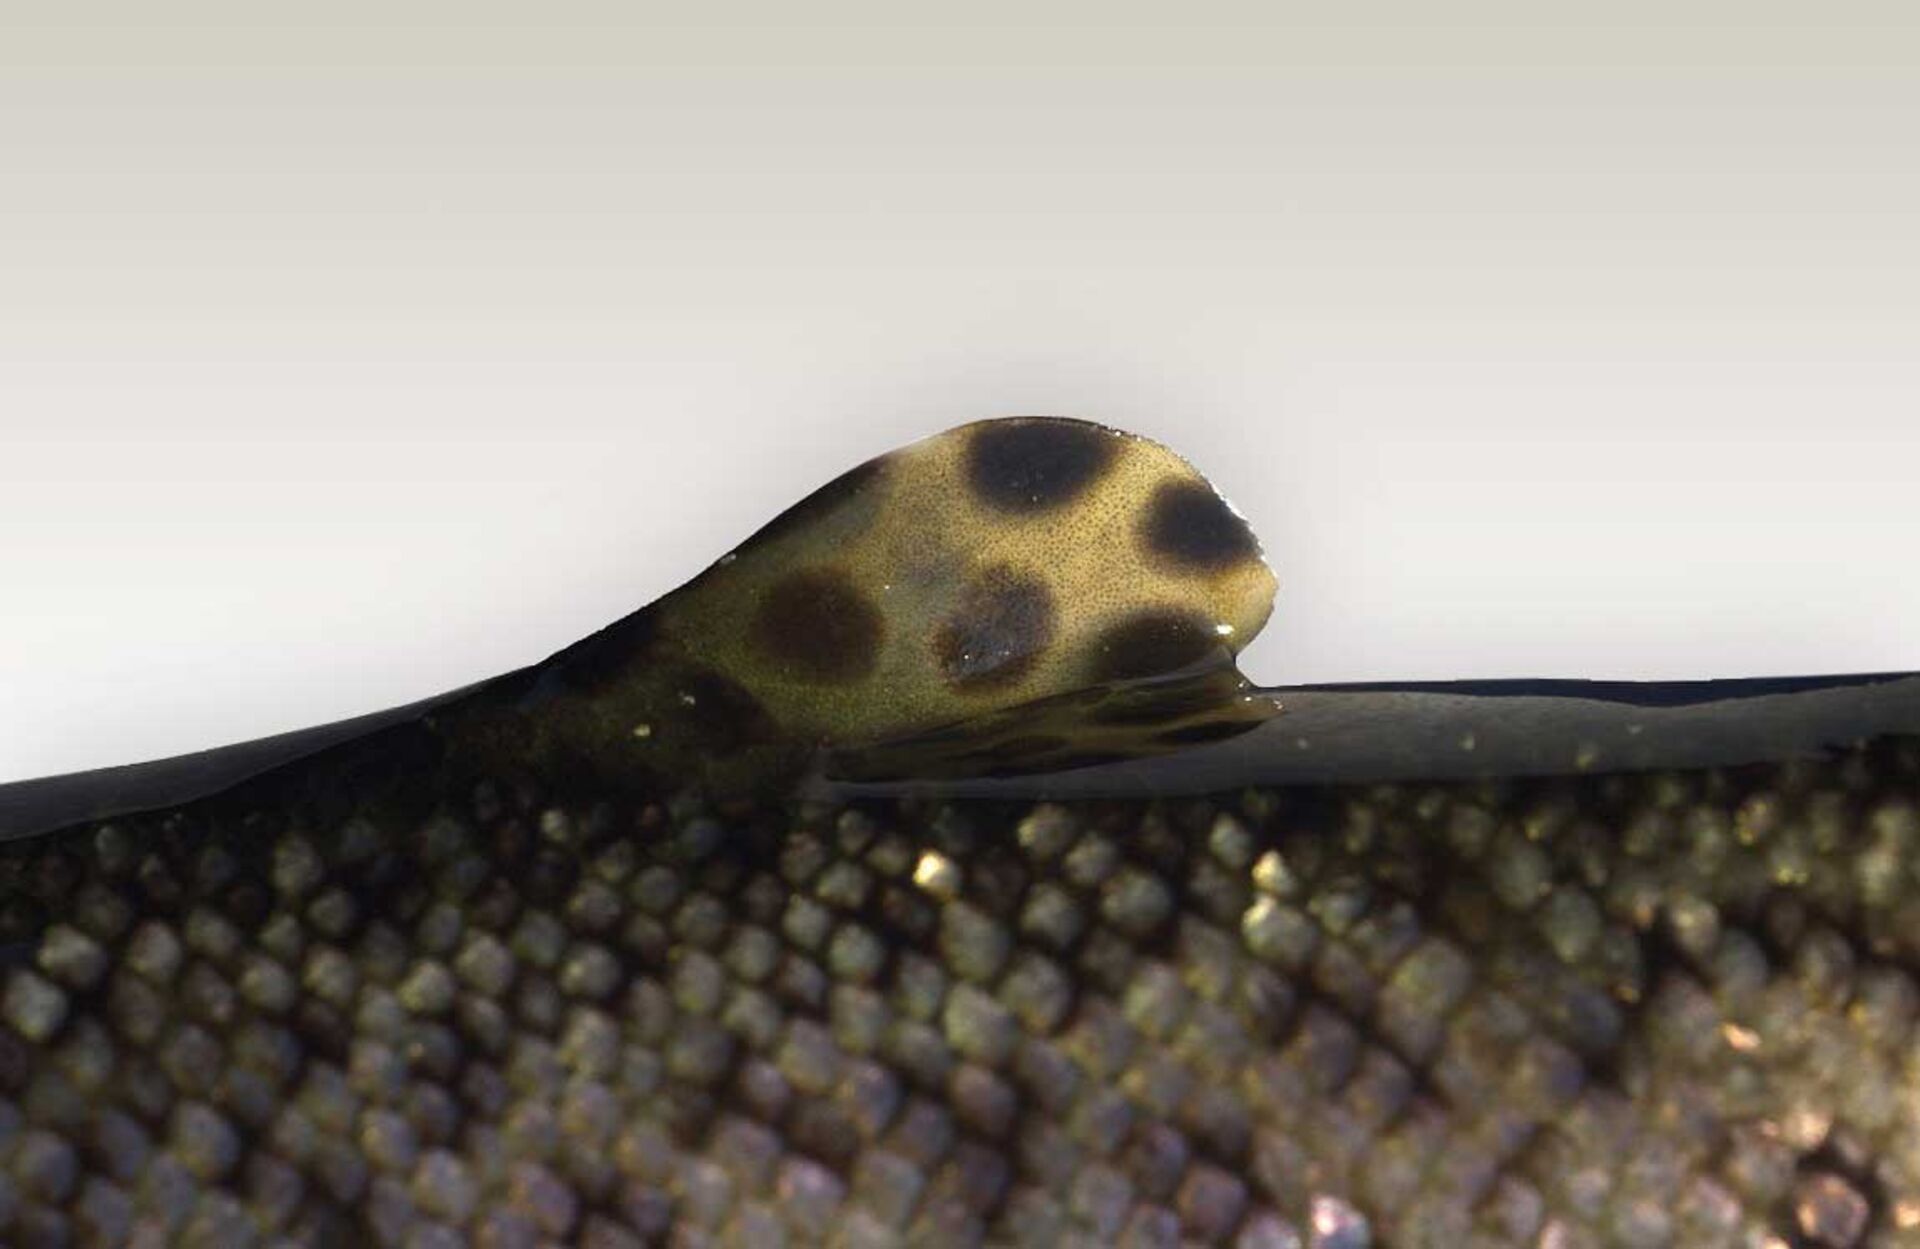  Die Fettflosse einer Regenbogenforelle dient dem Fisch zur Regulierung des Hormonhaushalts, so die Annahme  der Wissenschaftler. © Tino Strauss - wikimedia.org  